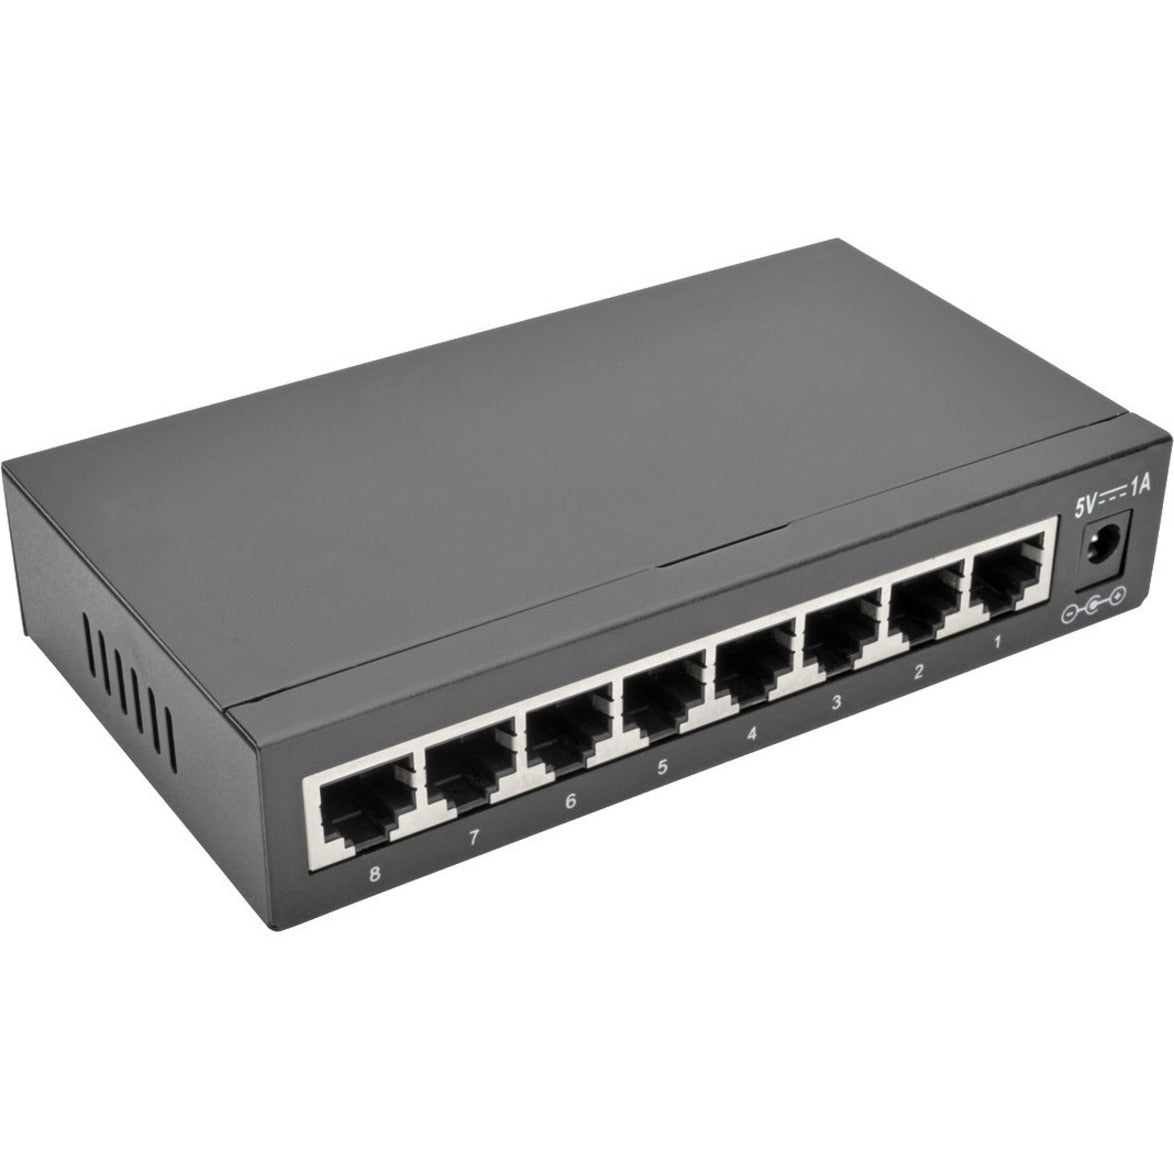 Tripp Lite NG8 8-Port 10/100/1000 Mbps Desktop Gigabit Ethernet Unmanaged Switch, Metal Housing